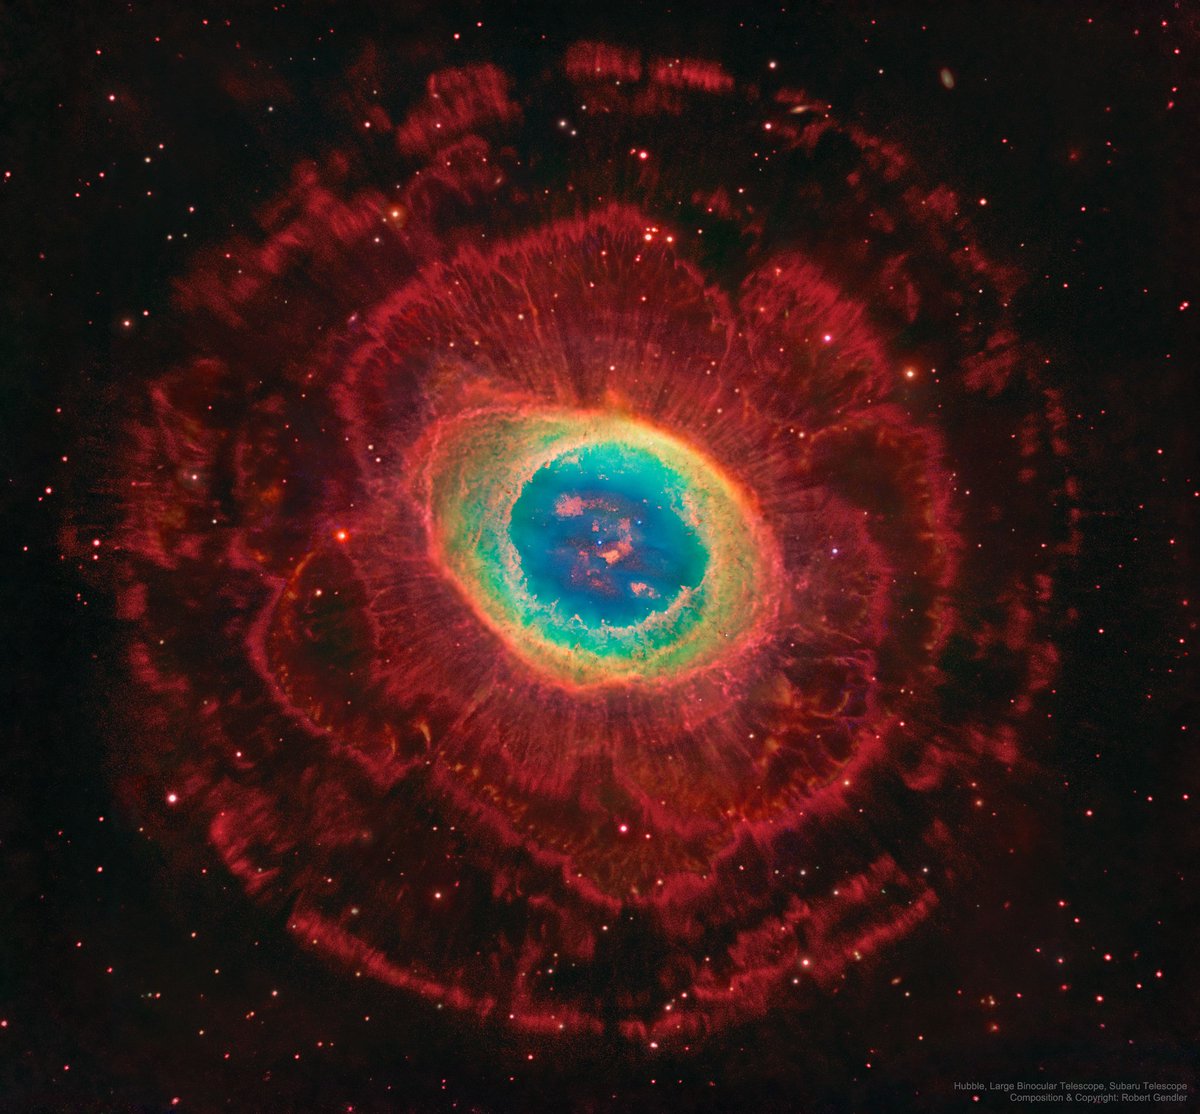 La nebulosa de l'anell està a 2.300 anys llum i mostra com acabarà el nostre sistema solar. Al centre hi ha un mini punt, és un estel al final de la seva vida. Una nana blanca que ha expulsat les capes externes d'hidrògen cap a l'espai tal com farà el Sol d'aquí a milions d'anys.